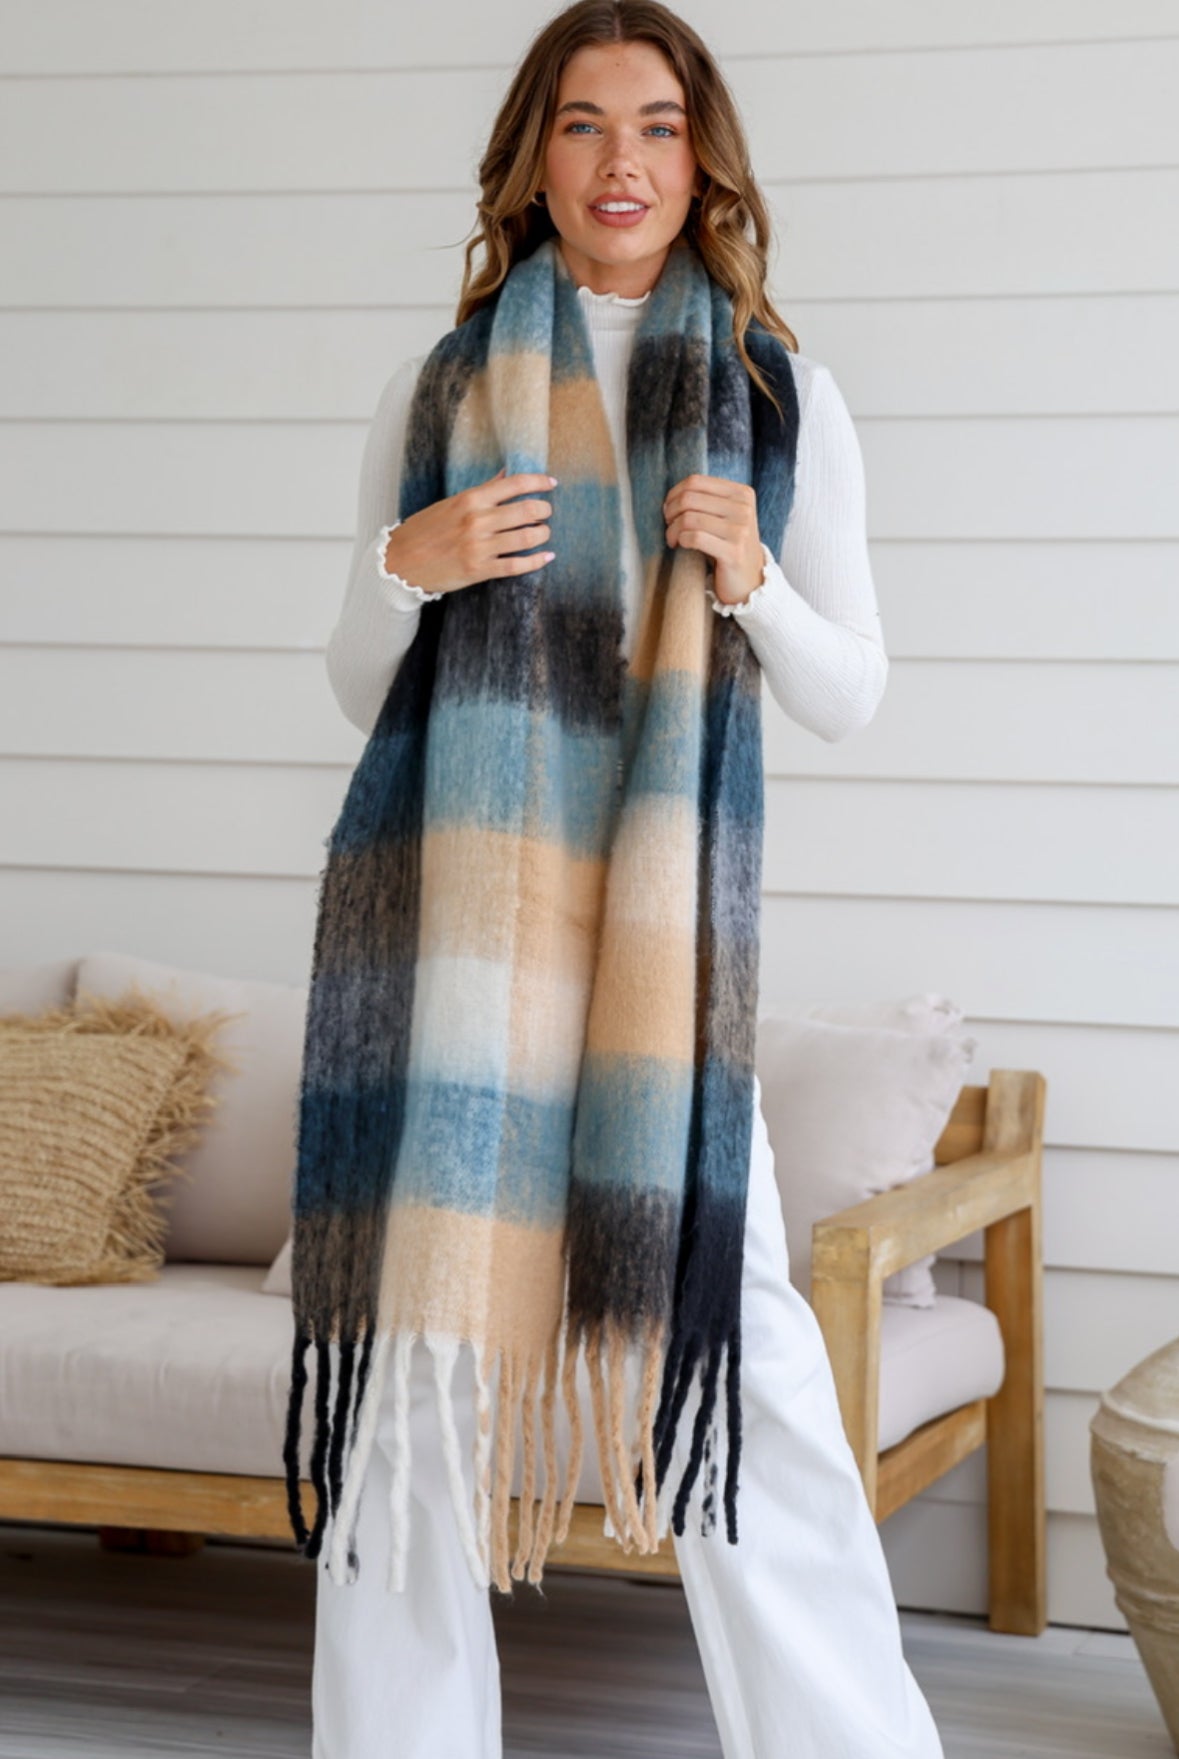 RHI RHI  - Beige,Black,Blue striped ombre scarf with tassels